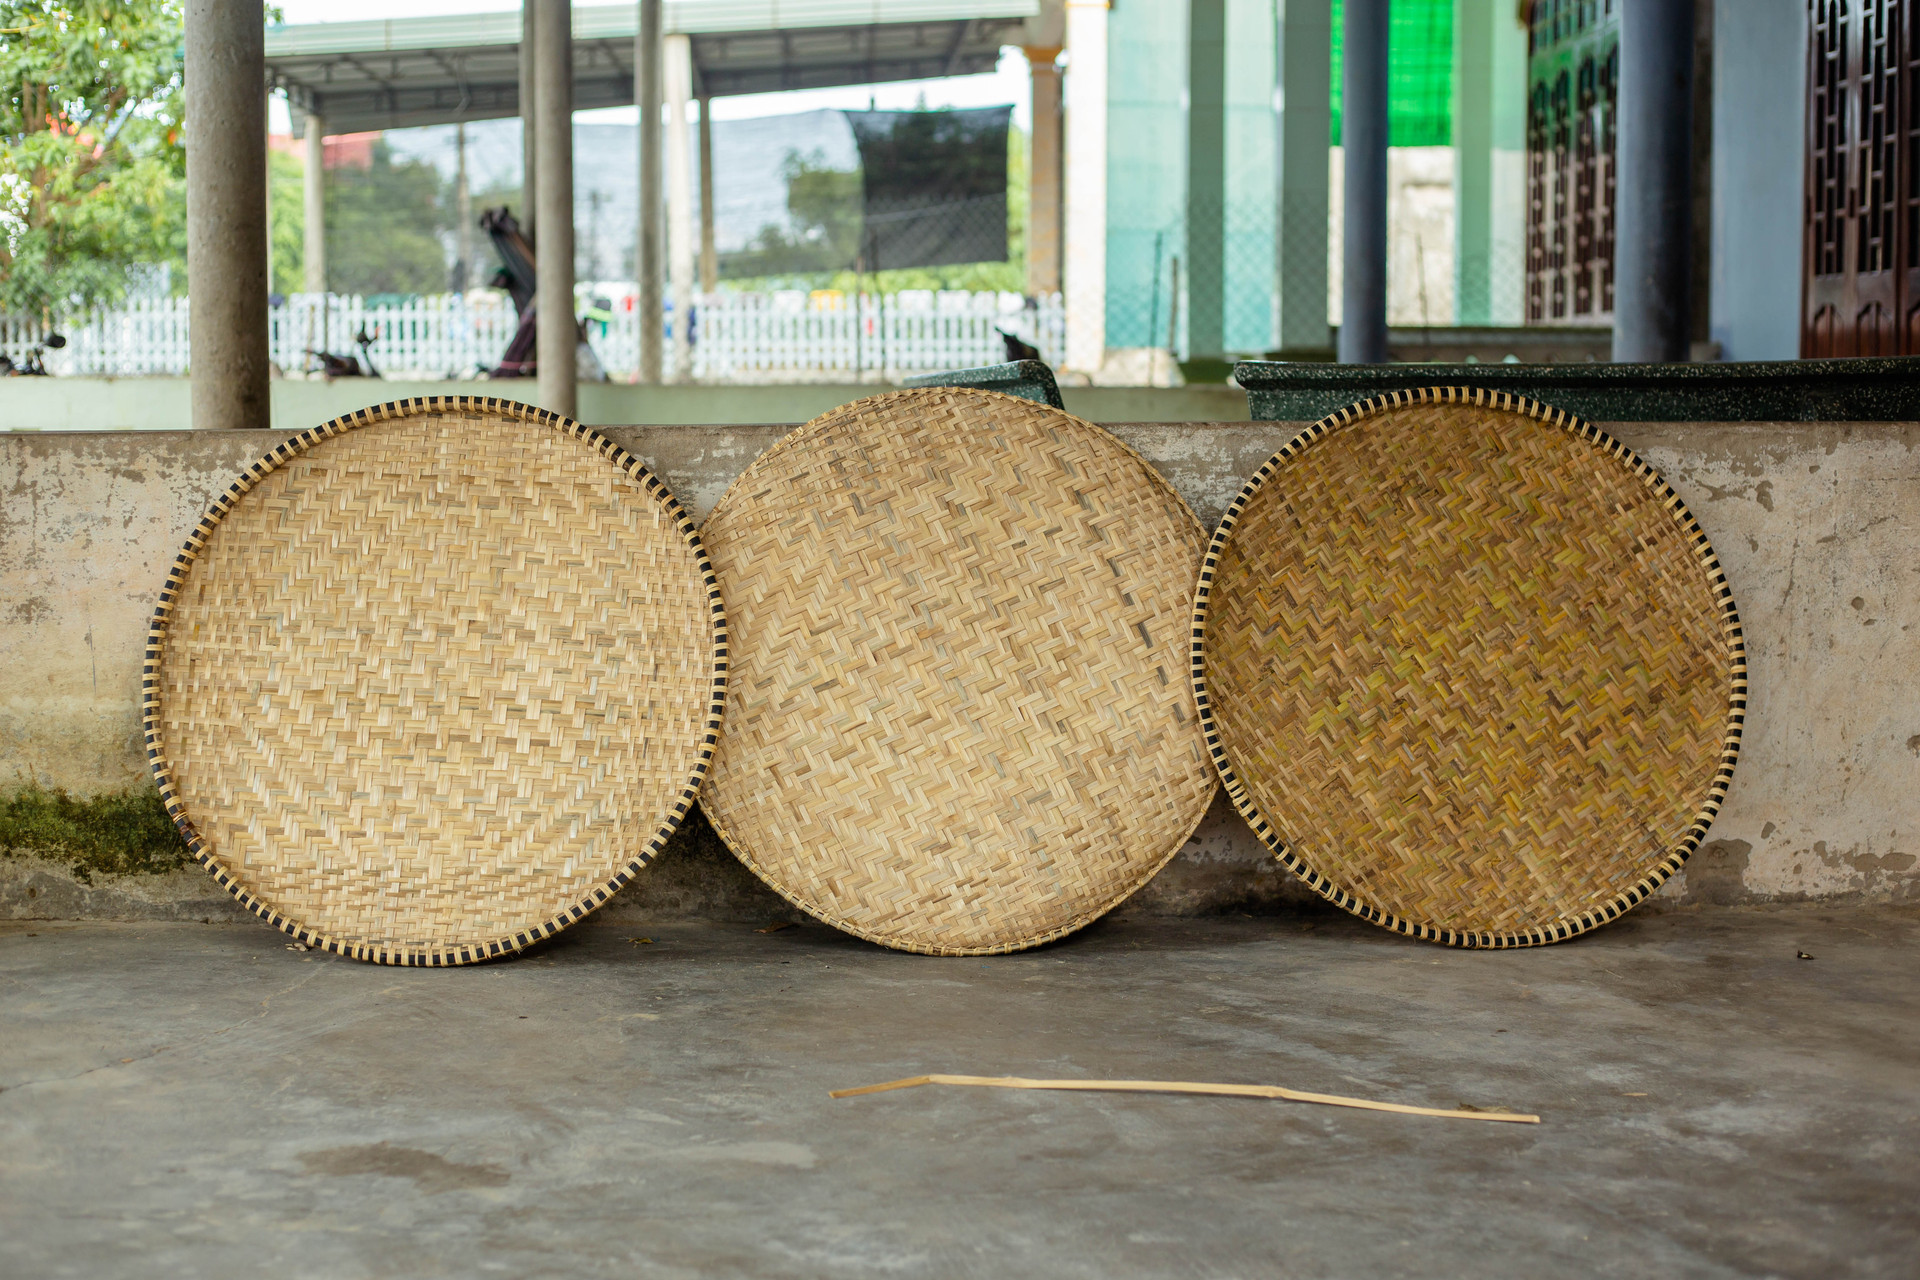 Làng Thọ Đơn (phường Quảng Thọ, TX Ba Đồn, Quảng Bình) nổi tiếng với nghề tạo ra những sản phẩm từ mây, tre, nứa… phục vụ nông nghiệp và sinh hoạt. Hằng năm, nơi đây đã cung ứng ra thị trường hàng chục nghìn sản phẩm trong và ngoài tỉnh.